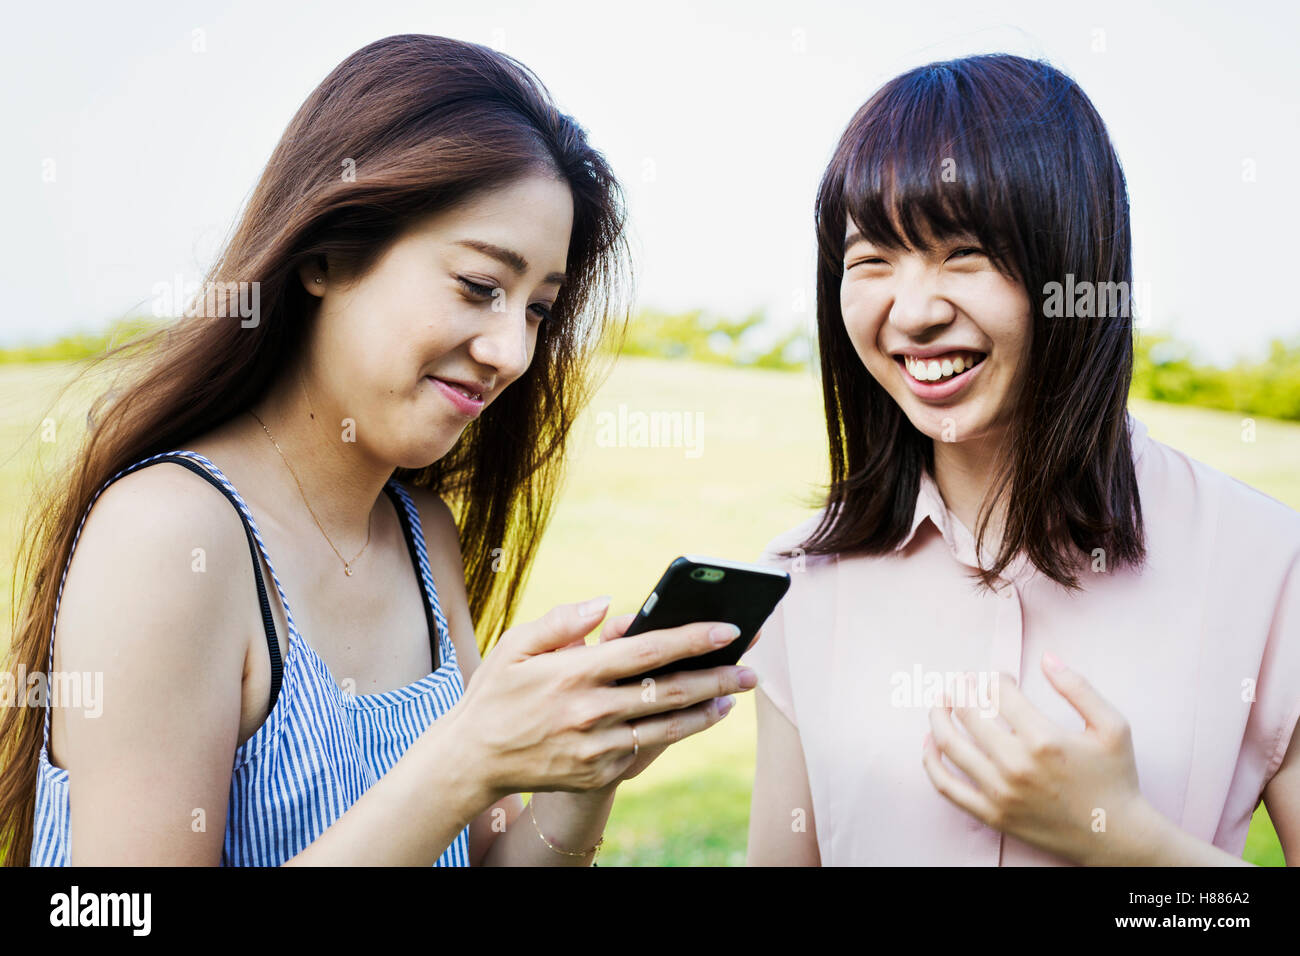 Sorridente due giovani donne con capelli lunghi marrone, tenendo in mano un telefono cellulare. Foto Stock